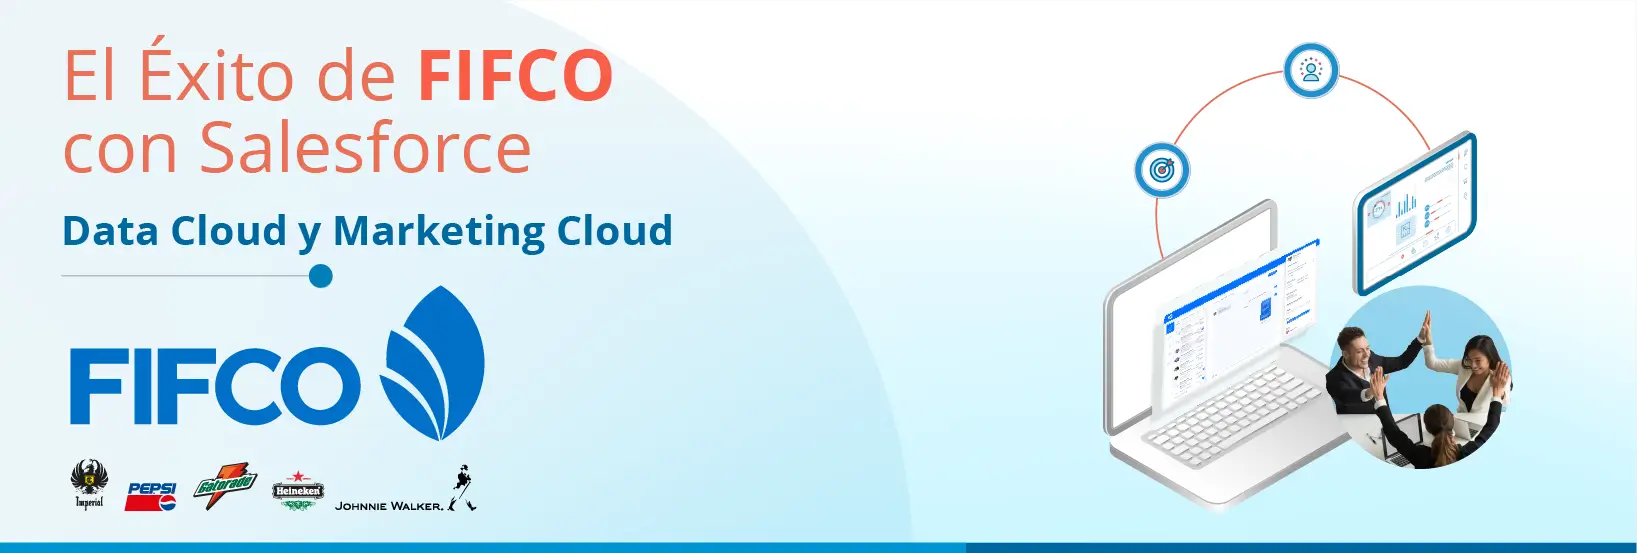 Redefinición del Marketing: FIFCO y la implementación Salesforce Data Cloud y Marketing Cloud más ambiciosa en Latinoamérica.